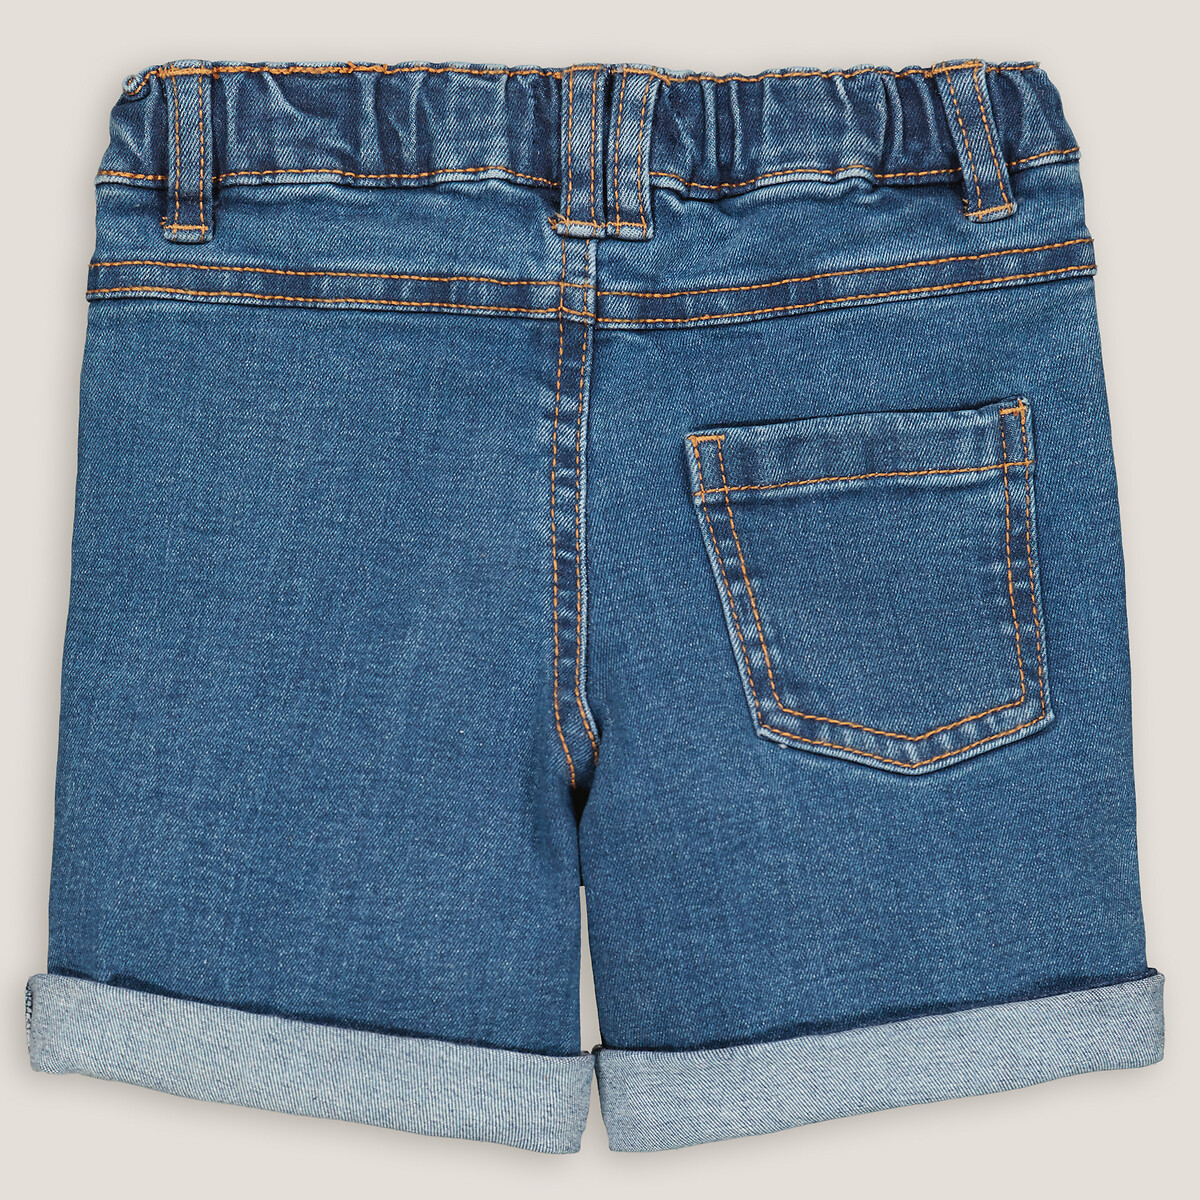 Шорты Из джинсовой ткани 1 год - 74 см синий LaRedoute, размер 1 год - 74 см - фото 2